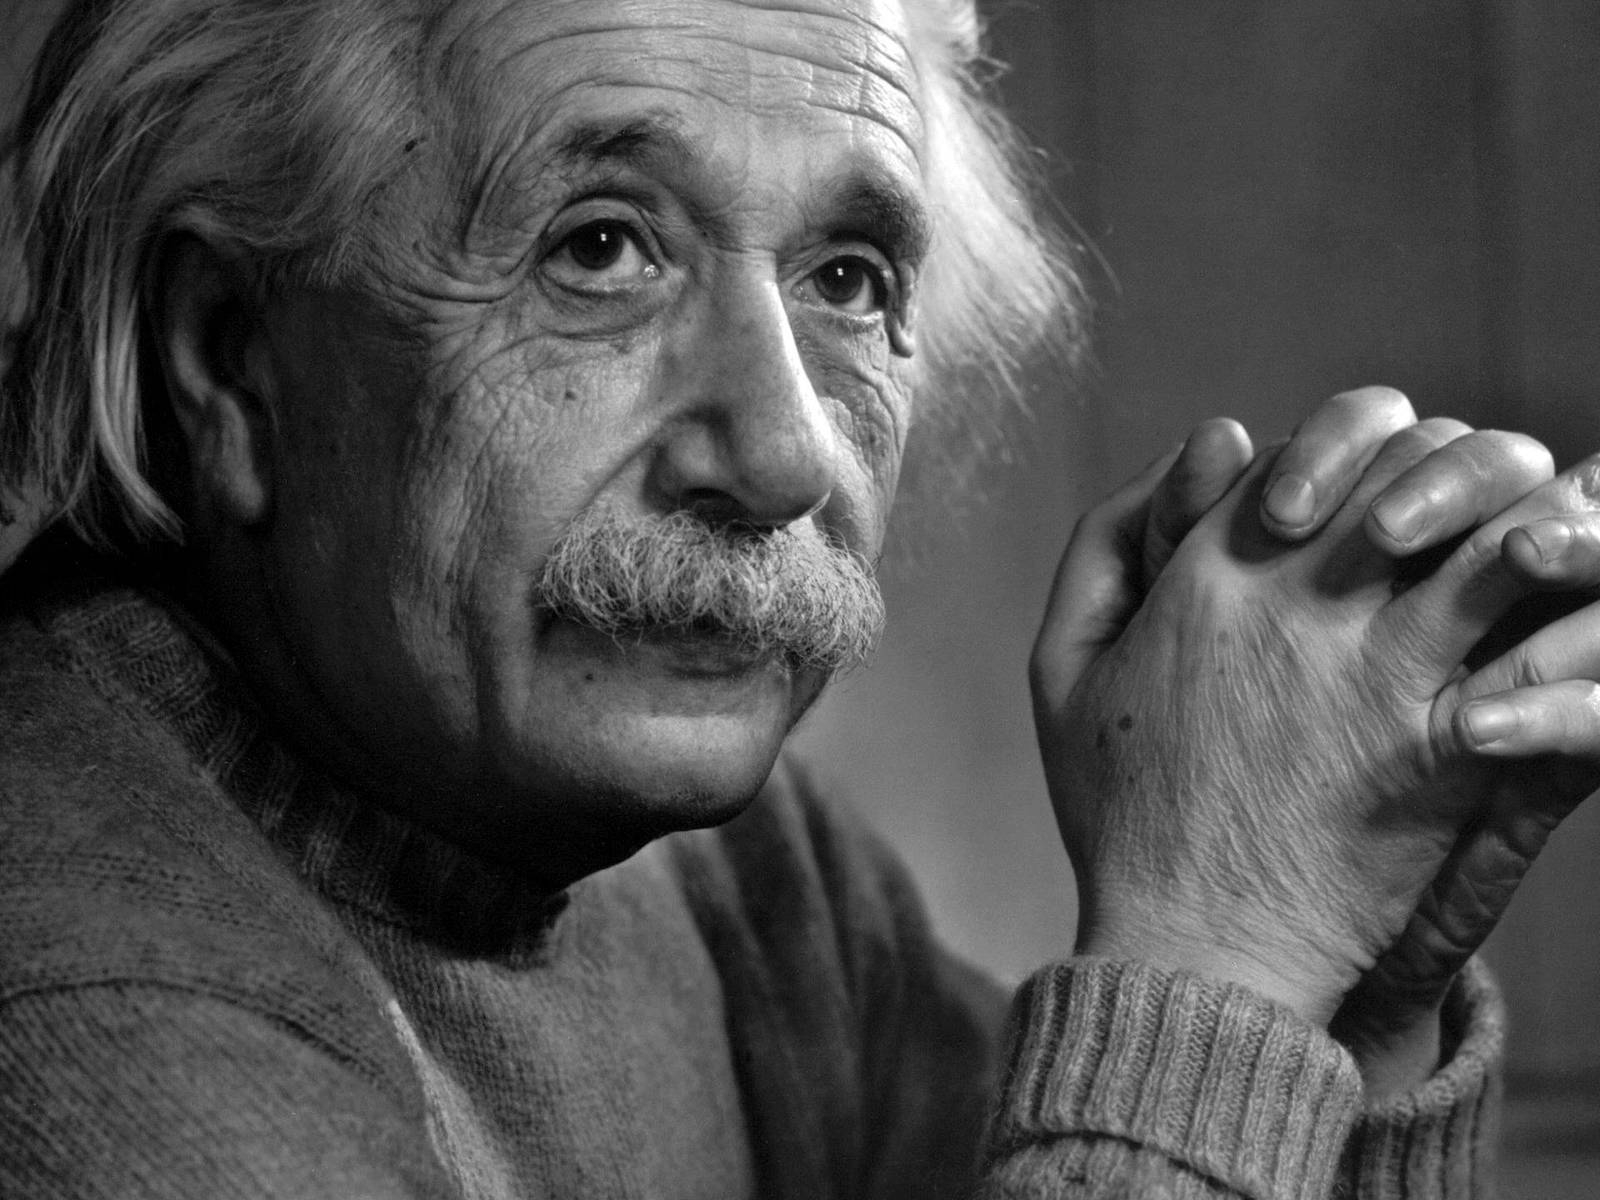 Albert Einstein Monochrome for 1600 x 1200 resolution